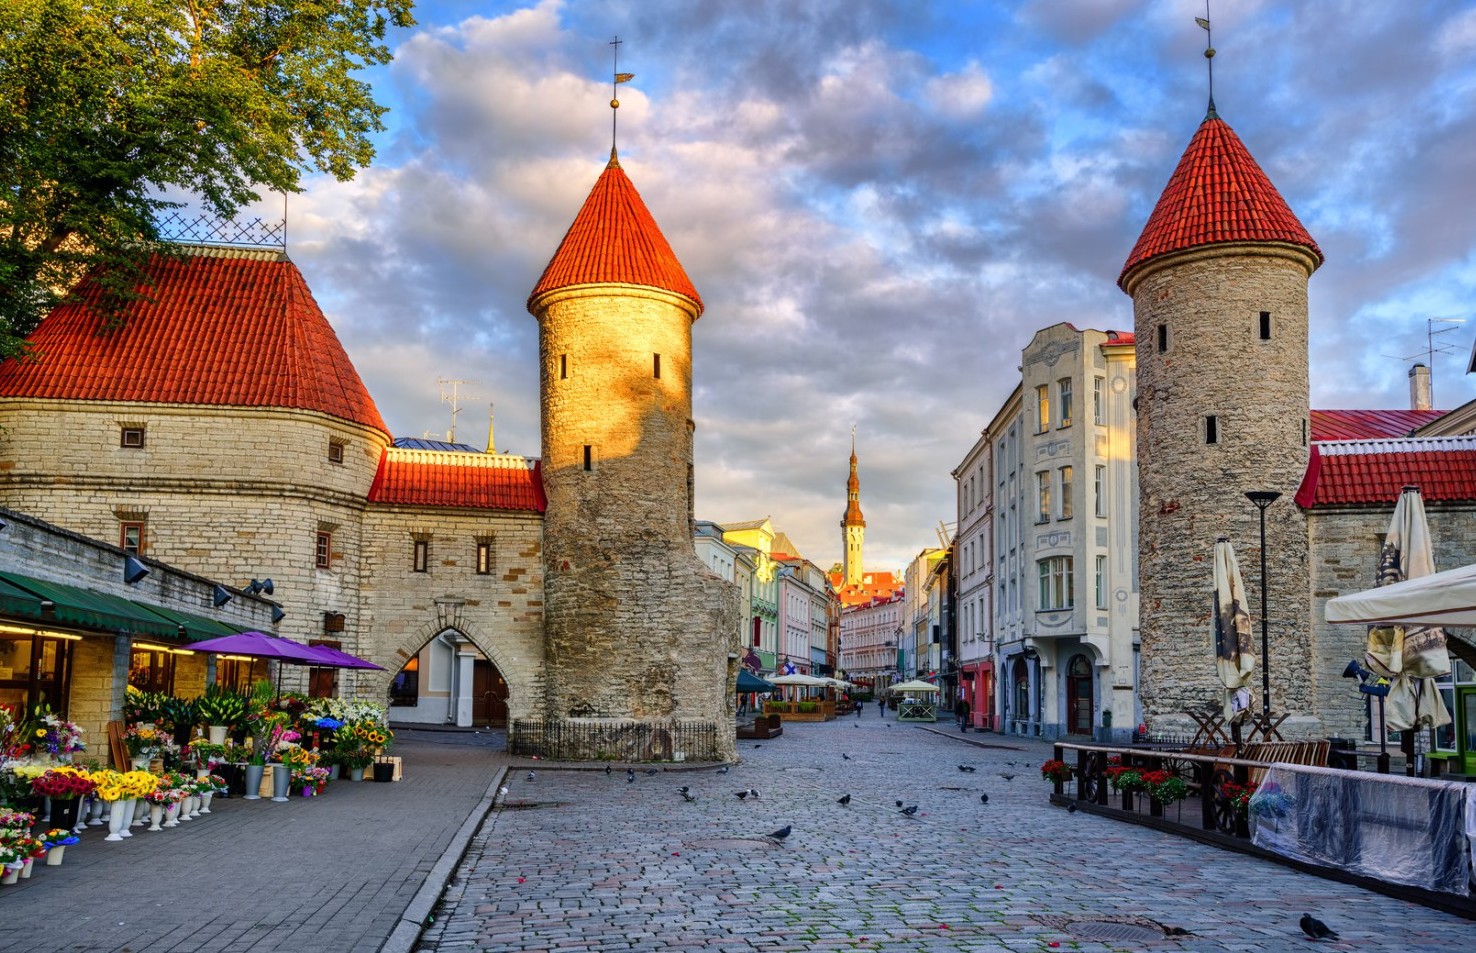 Tallinn Viru Gate